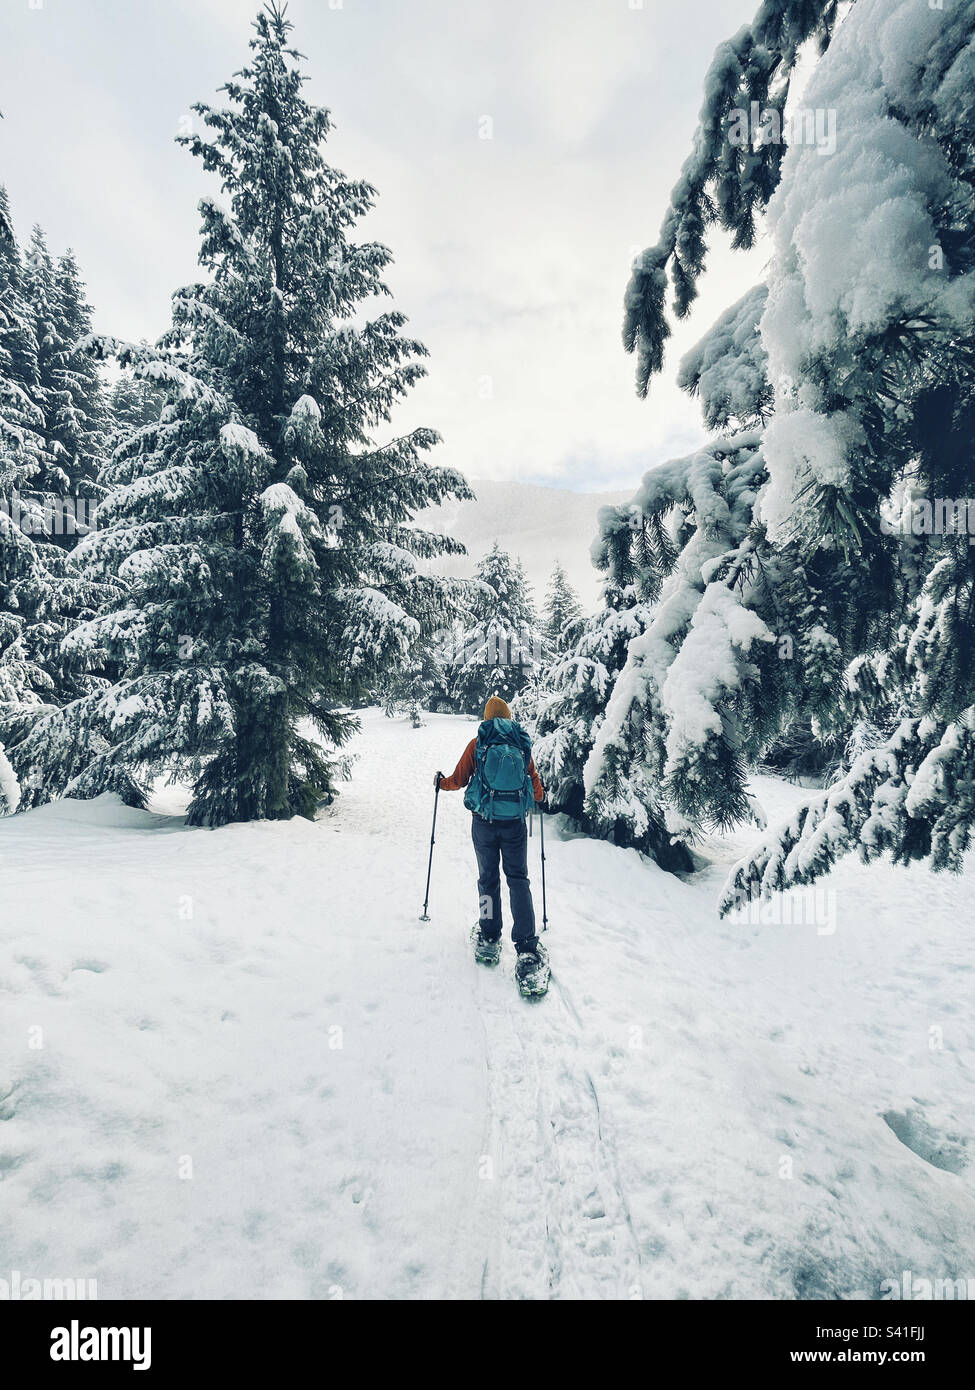 Racchette da neve nel paese delle meraviglie d'inverno Foto Stock